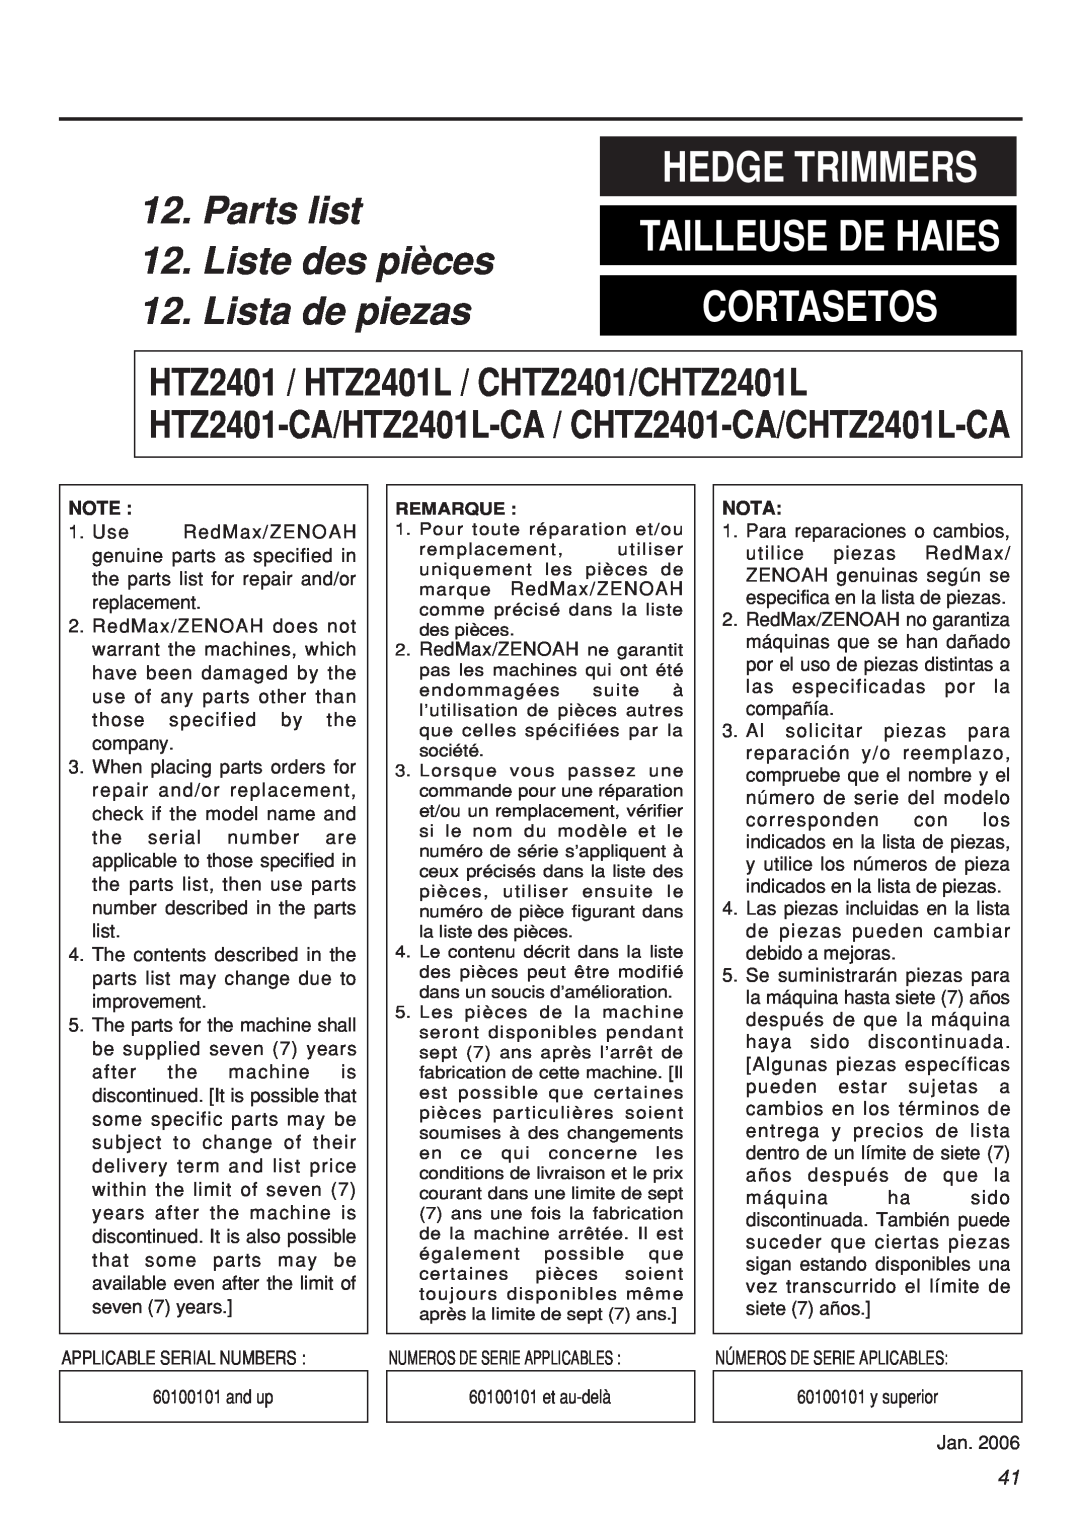 Zenoah CHTZ2401-CA Hedge Trimmers, Cortasetos, Parts list 12. Liste des pièces 12. Lista de piezas, Tailleuse De Haies 